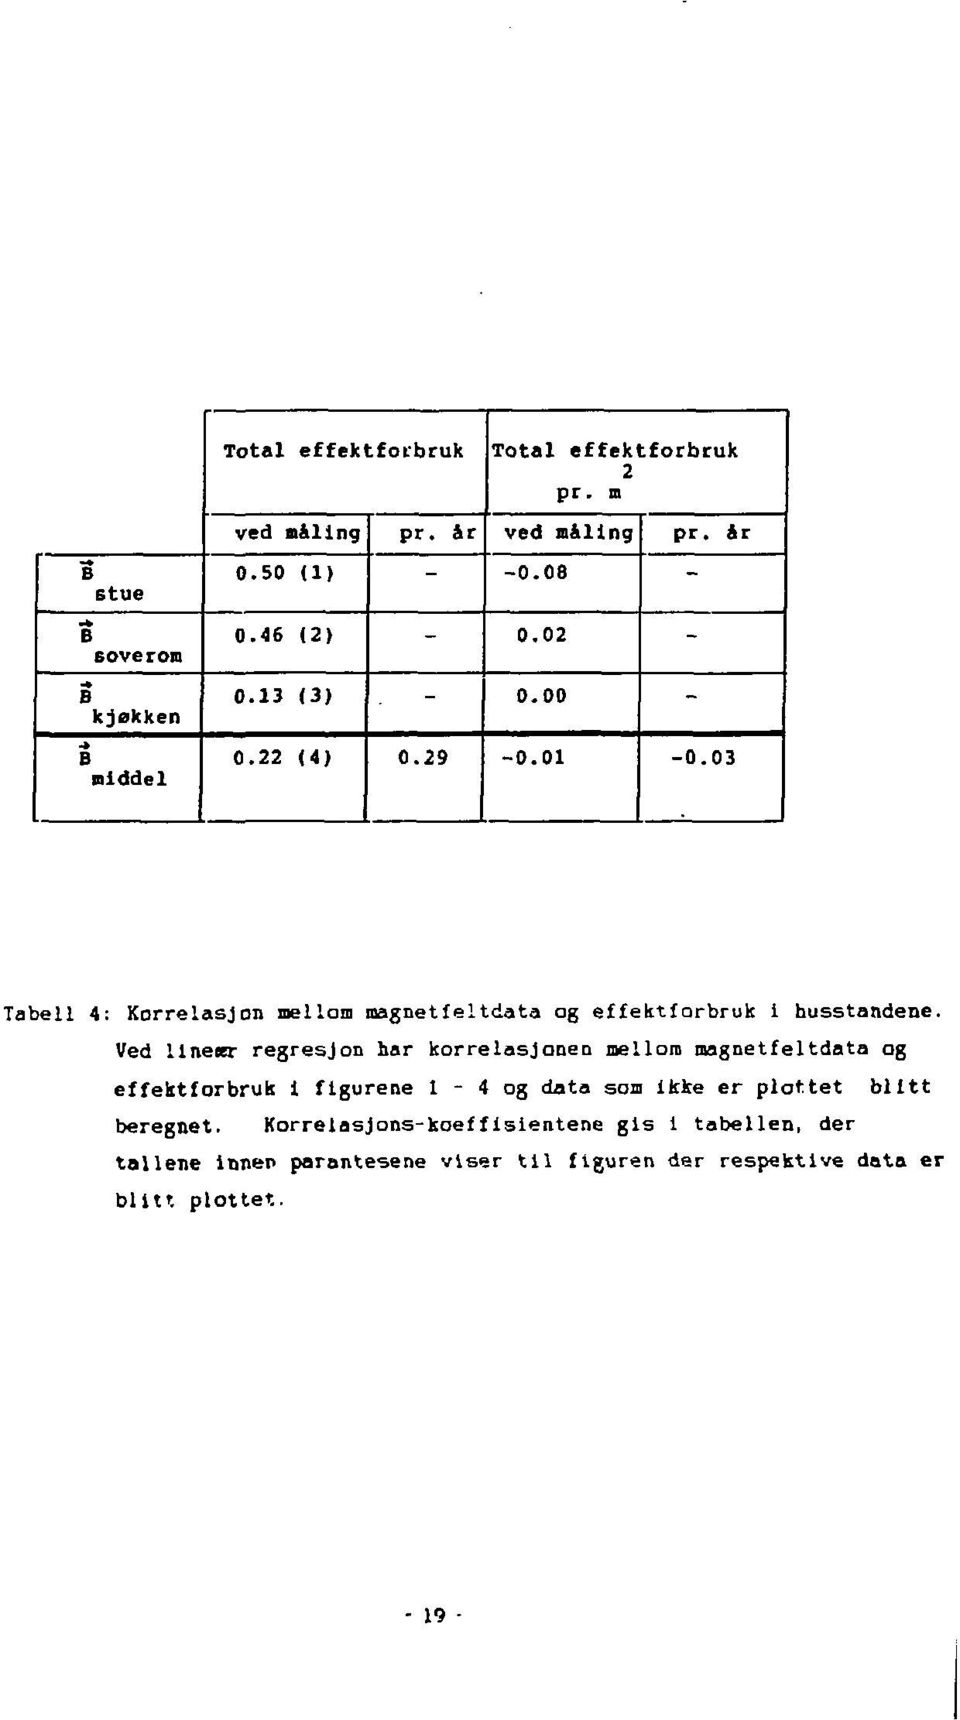 03 Tabell 4: Korrelasjon mellom magnetfeltdata og effektforbruk 1 husstandene.